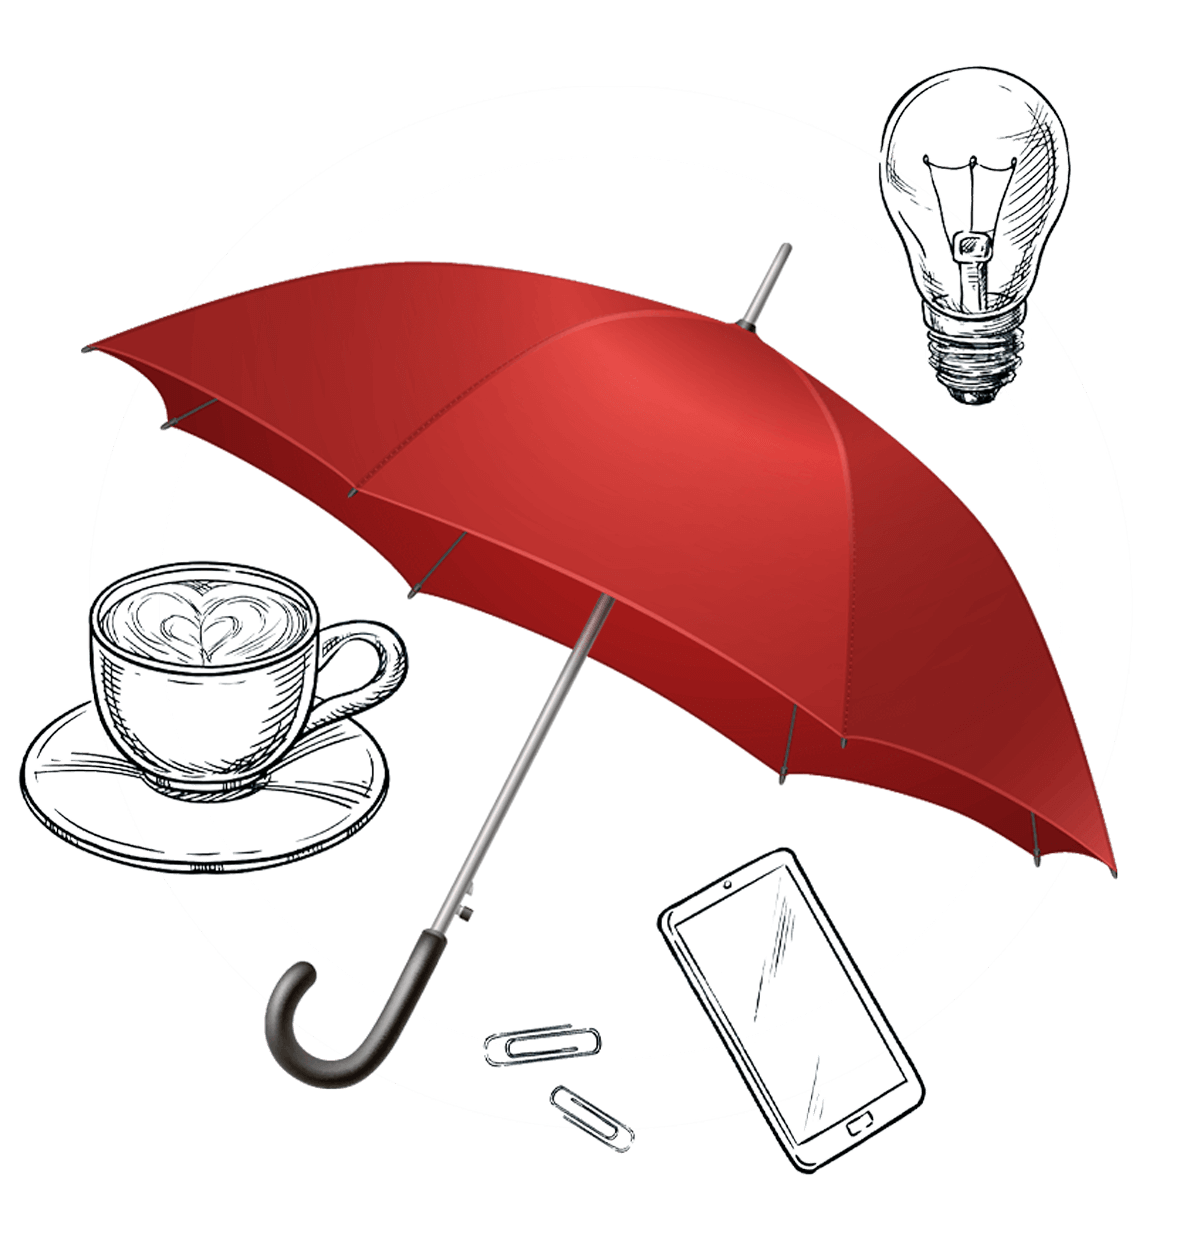 Diese Grafik zeigt einen roten Regenschirm und ist ein Symbol für Sexarbeit.